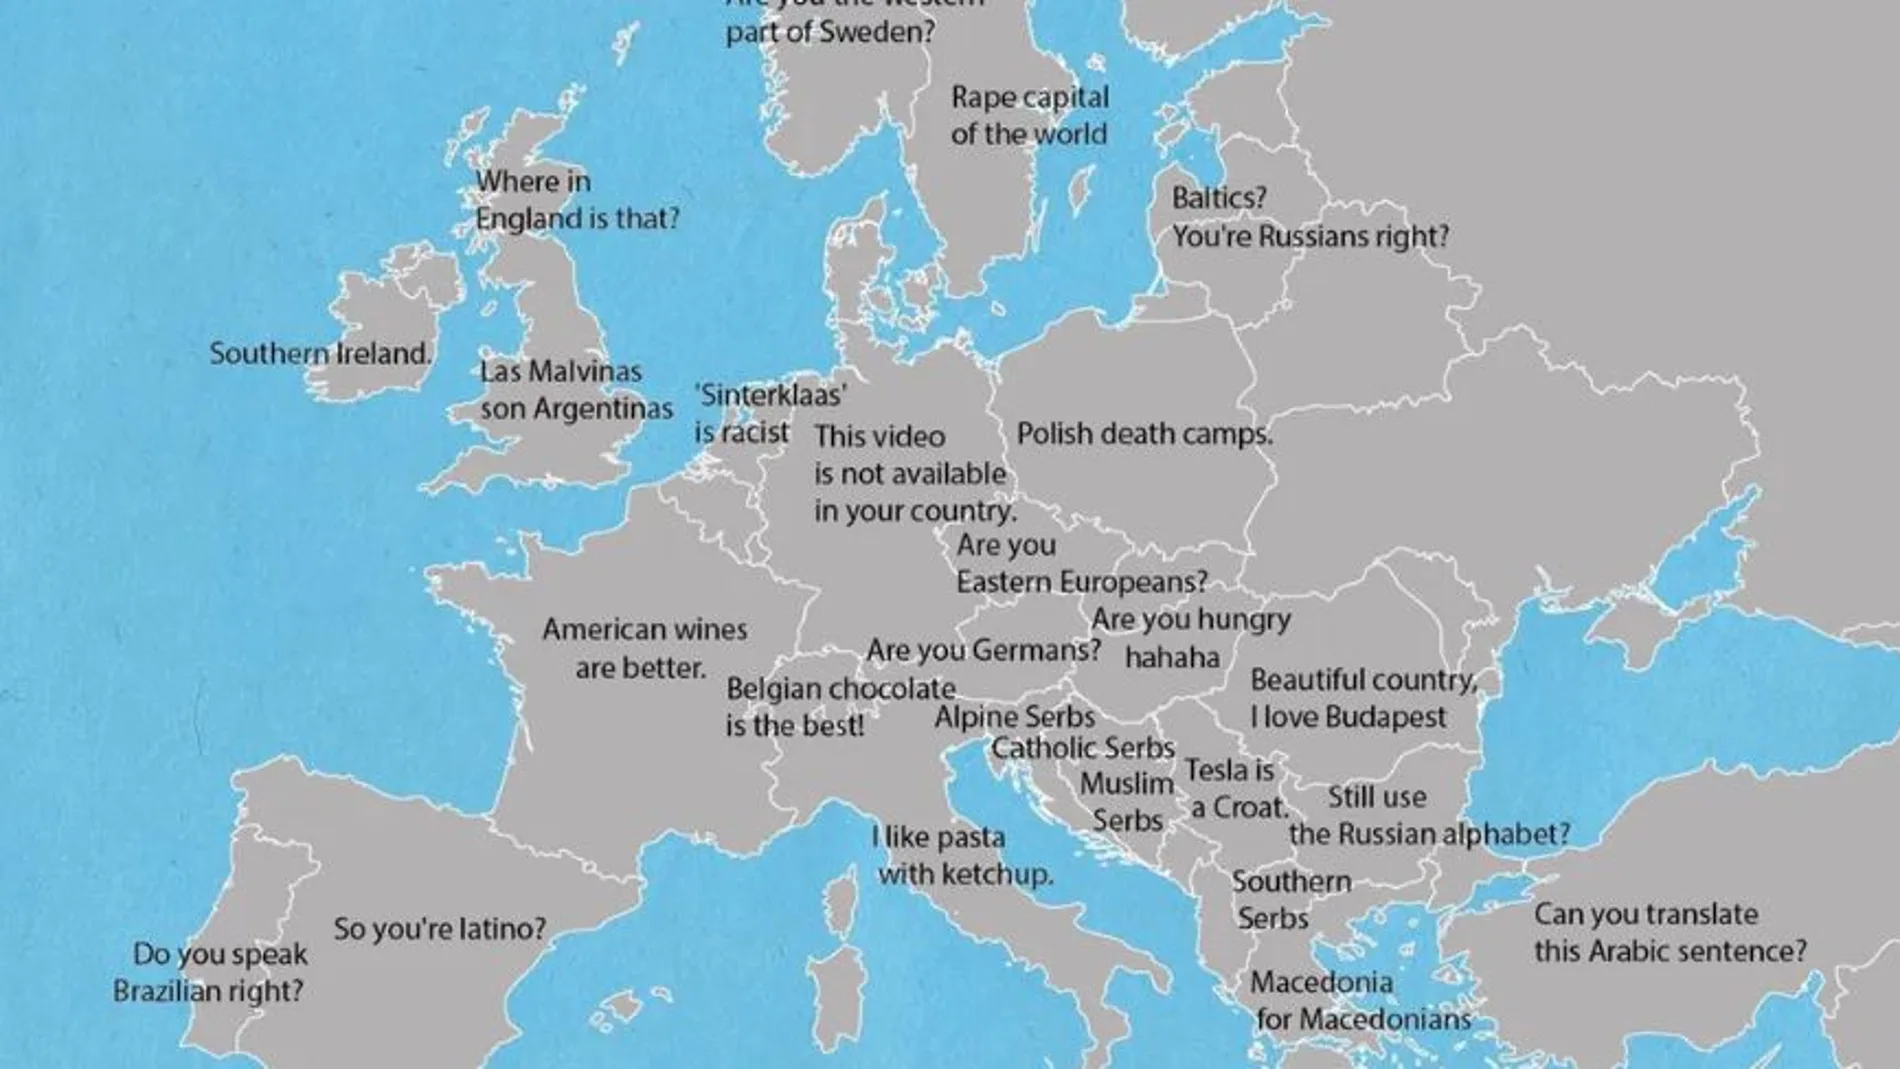 Así se ofende a cada país de Europa, según los usuarios de Reddit